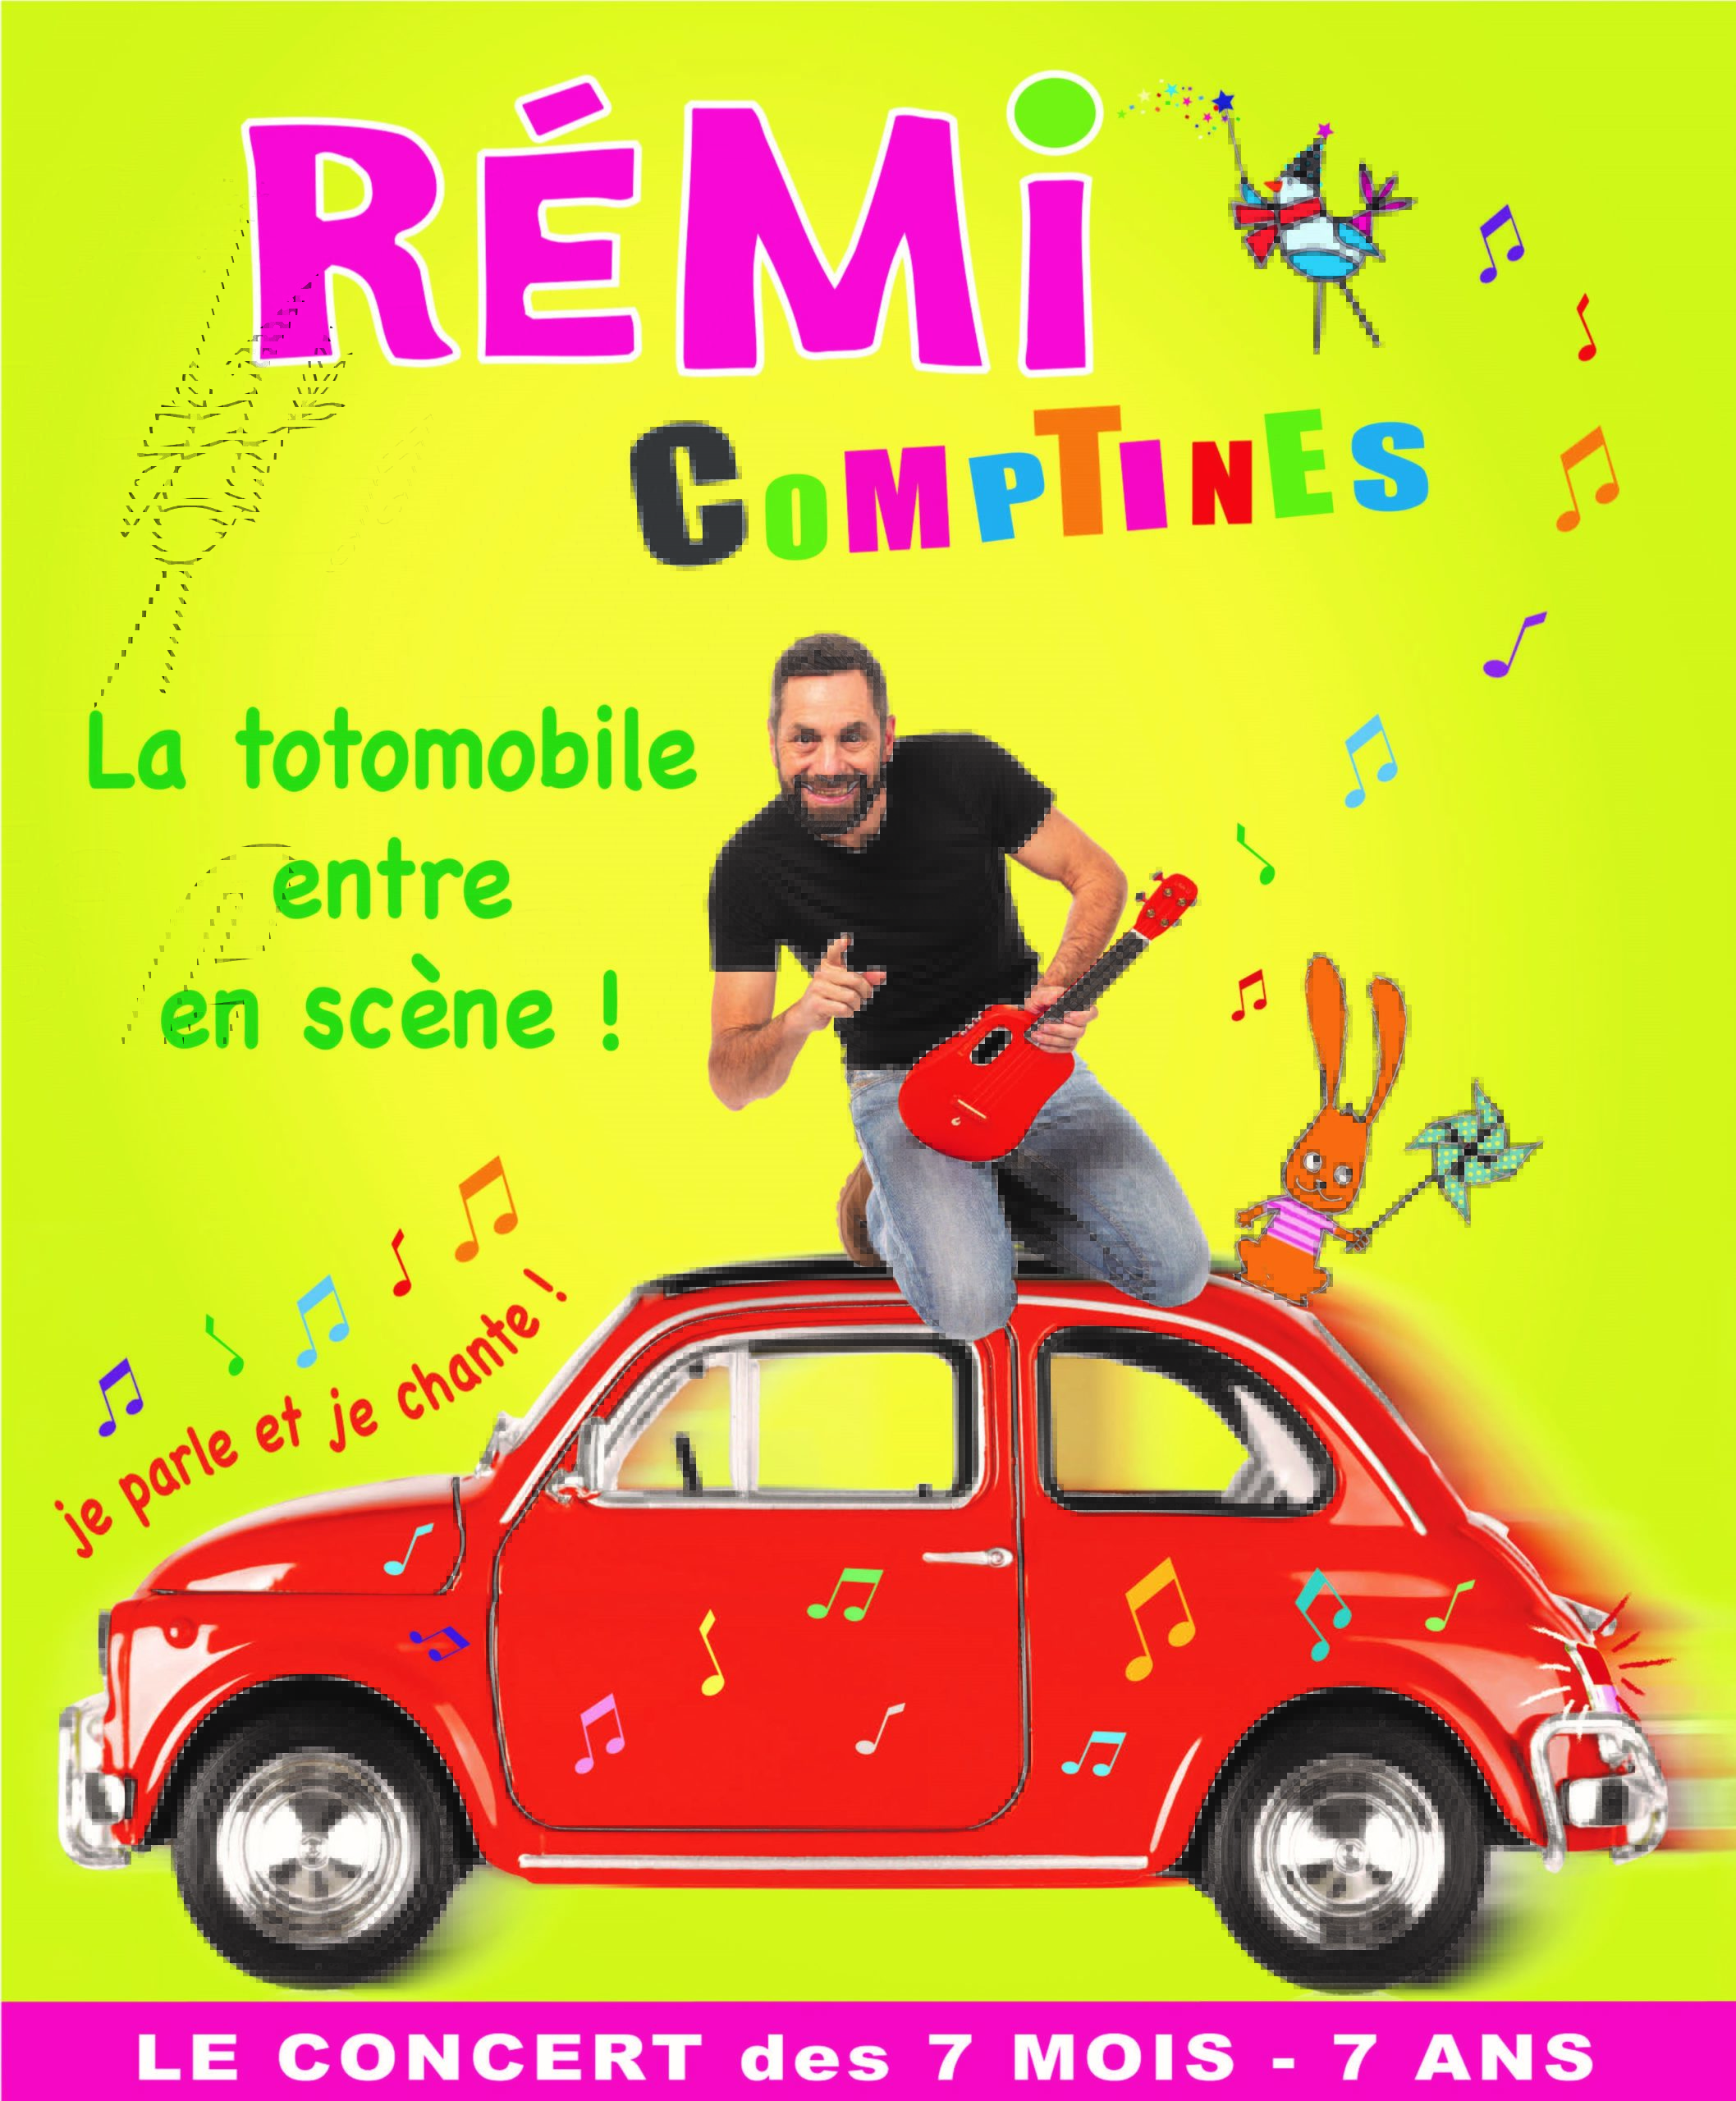 Rémi Comptines - Le Kabaret - Tinqueux (51)